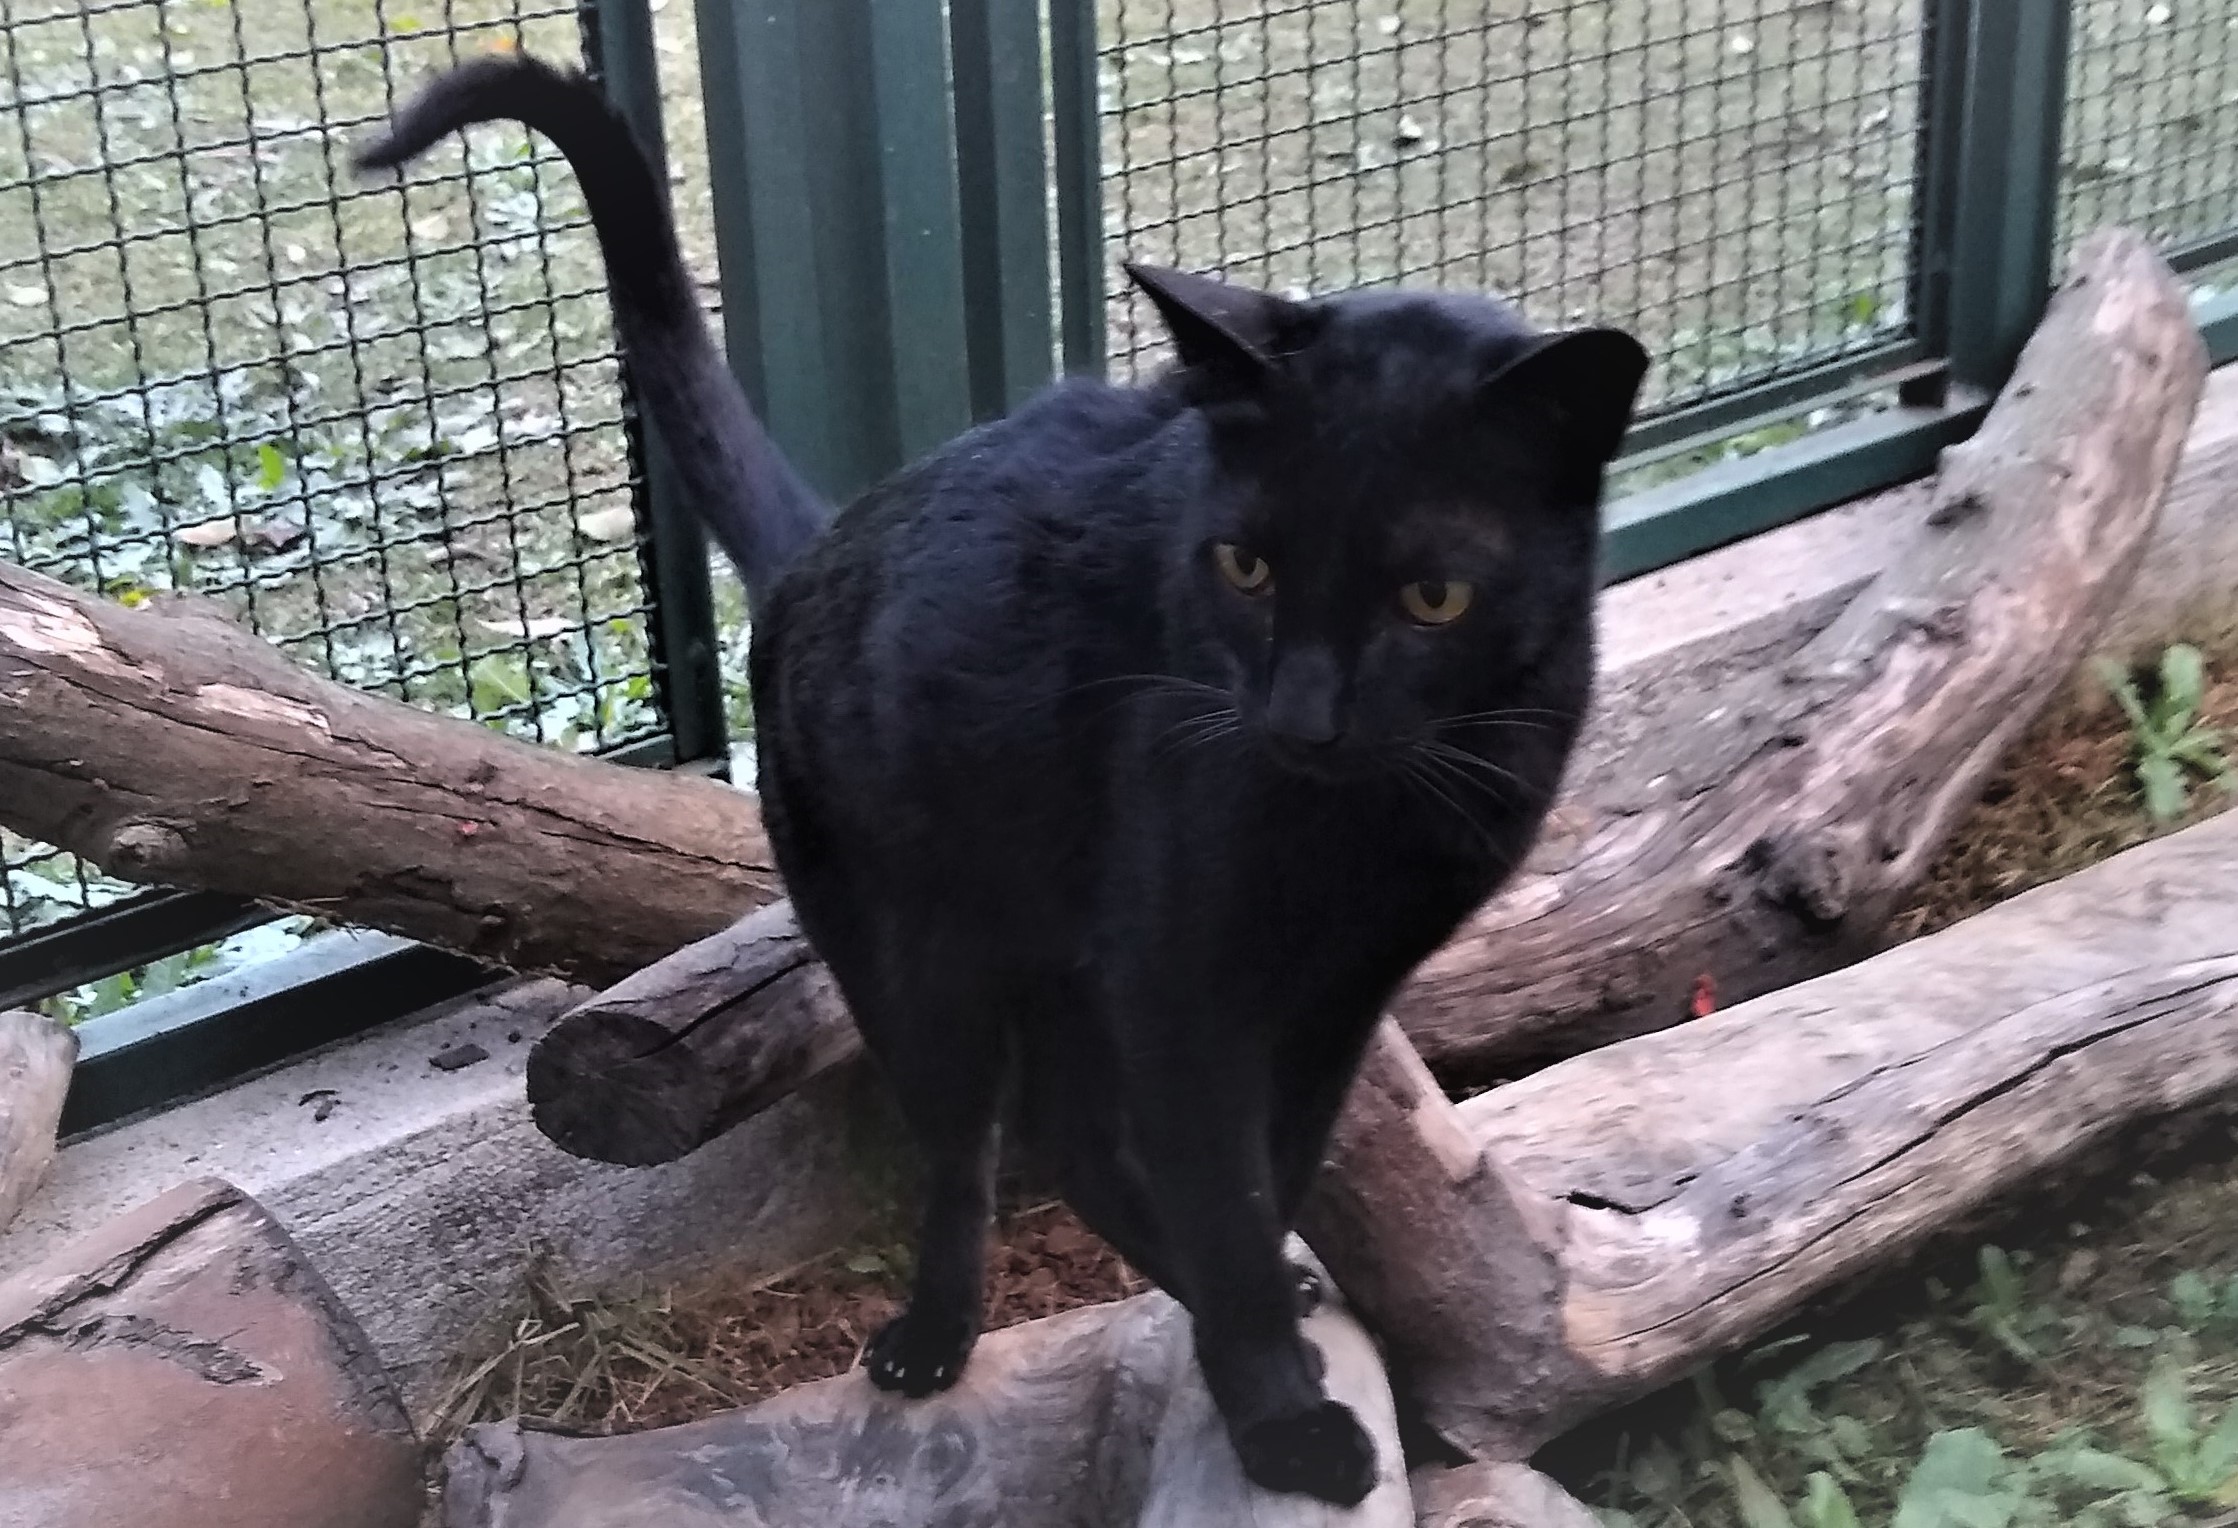 #PraCegoVer: Fotografia do gatinho Rony, Ele é todo preto e está em cima de um tronco.